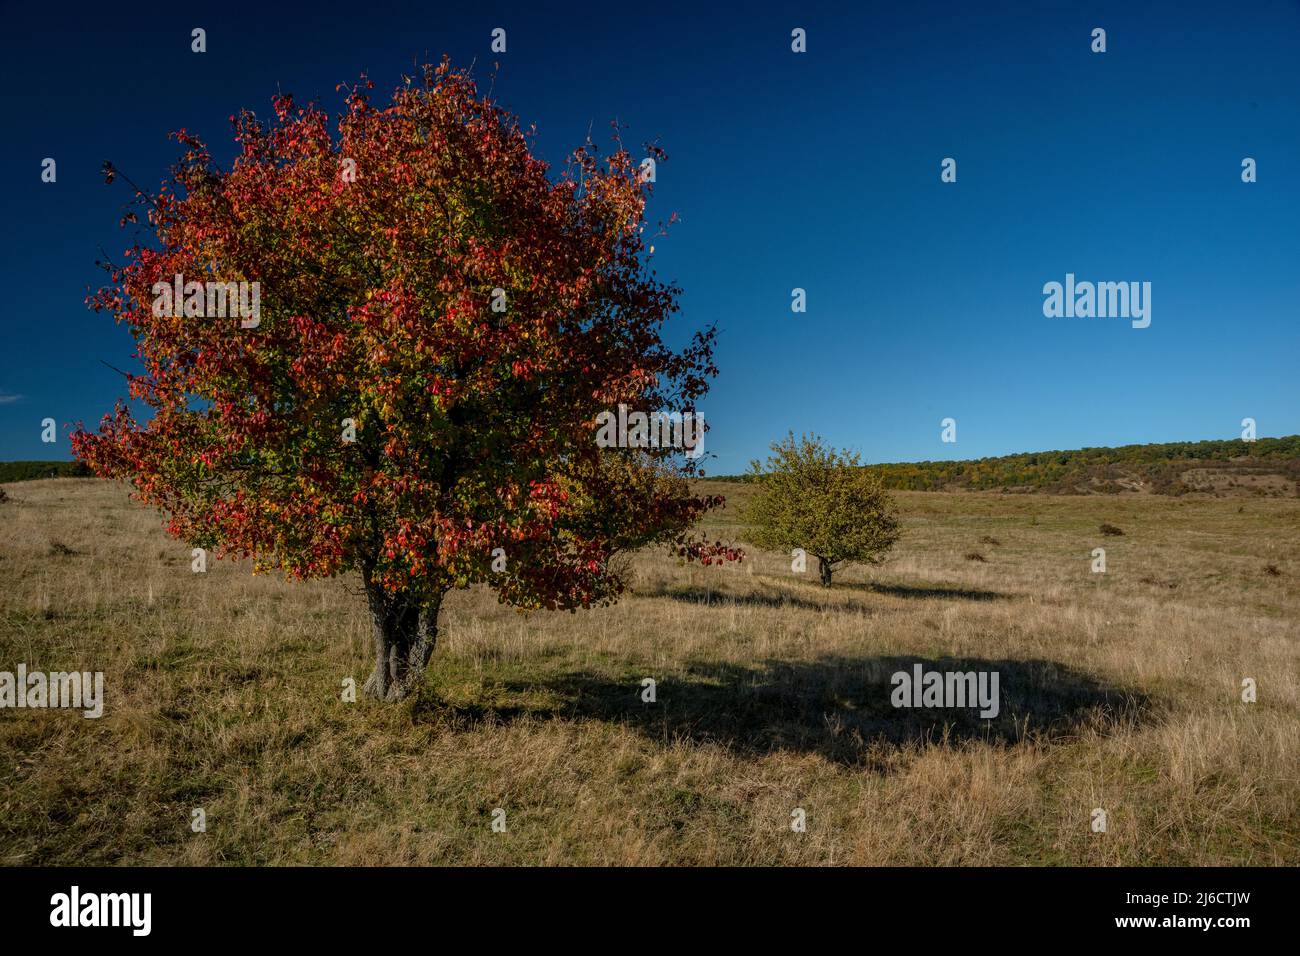 European wild pear, Pyrus pyraster, tree in open grassland in Saxon Transylvania, Romania. Autumn. Stock Photo